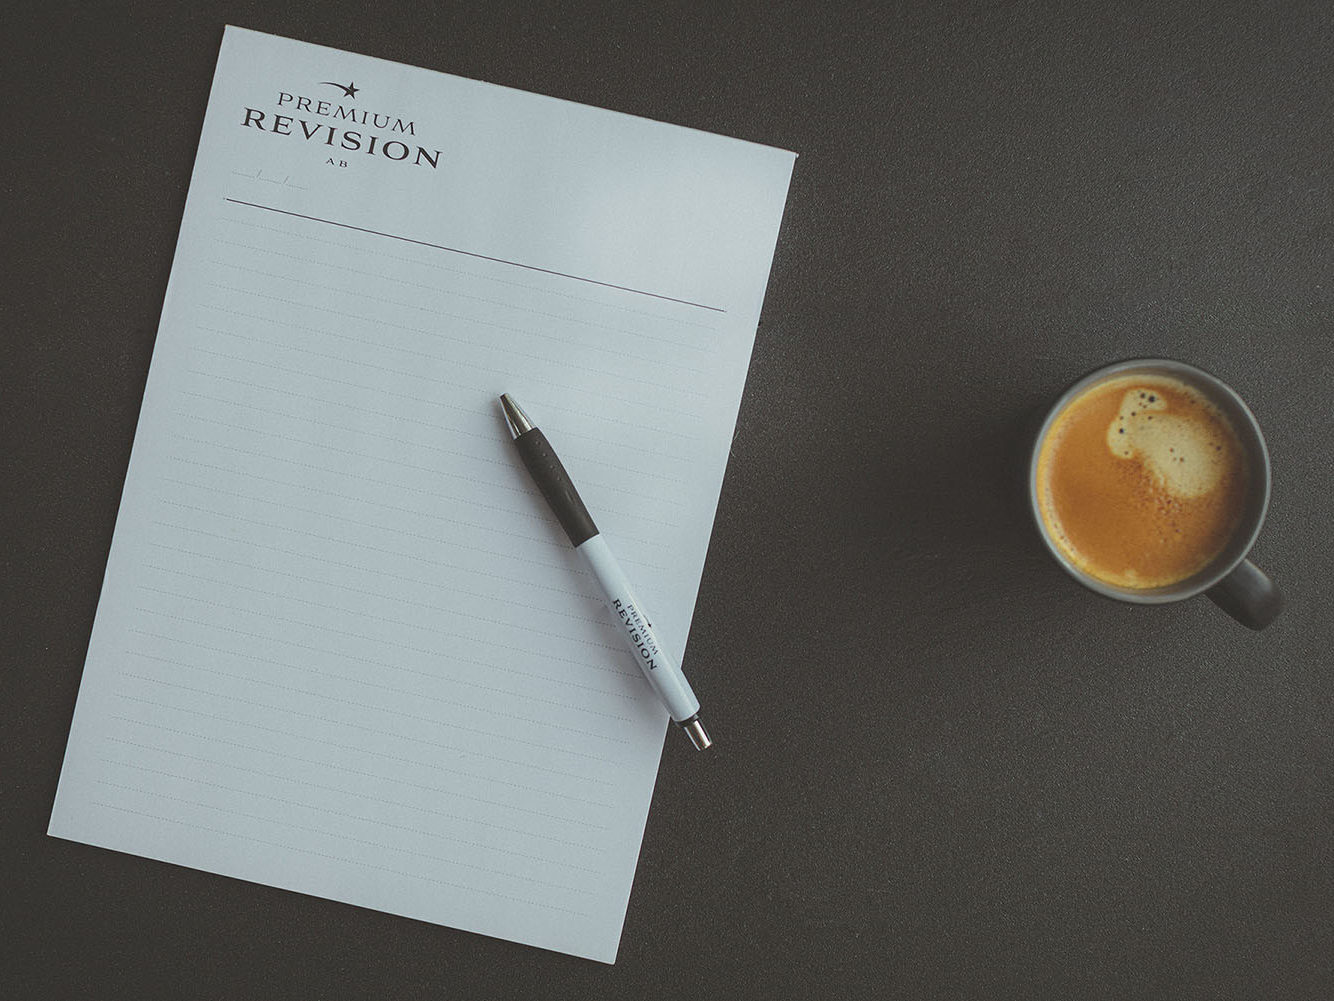 Premium Revision dokument med en penna och en kaffekopp